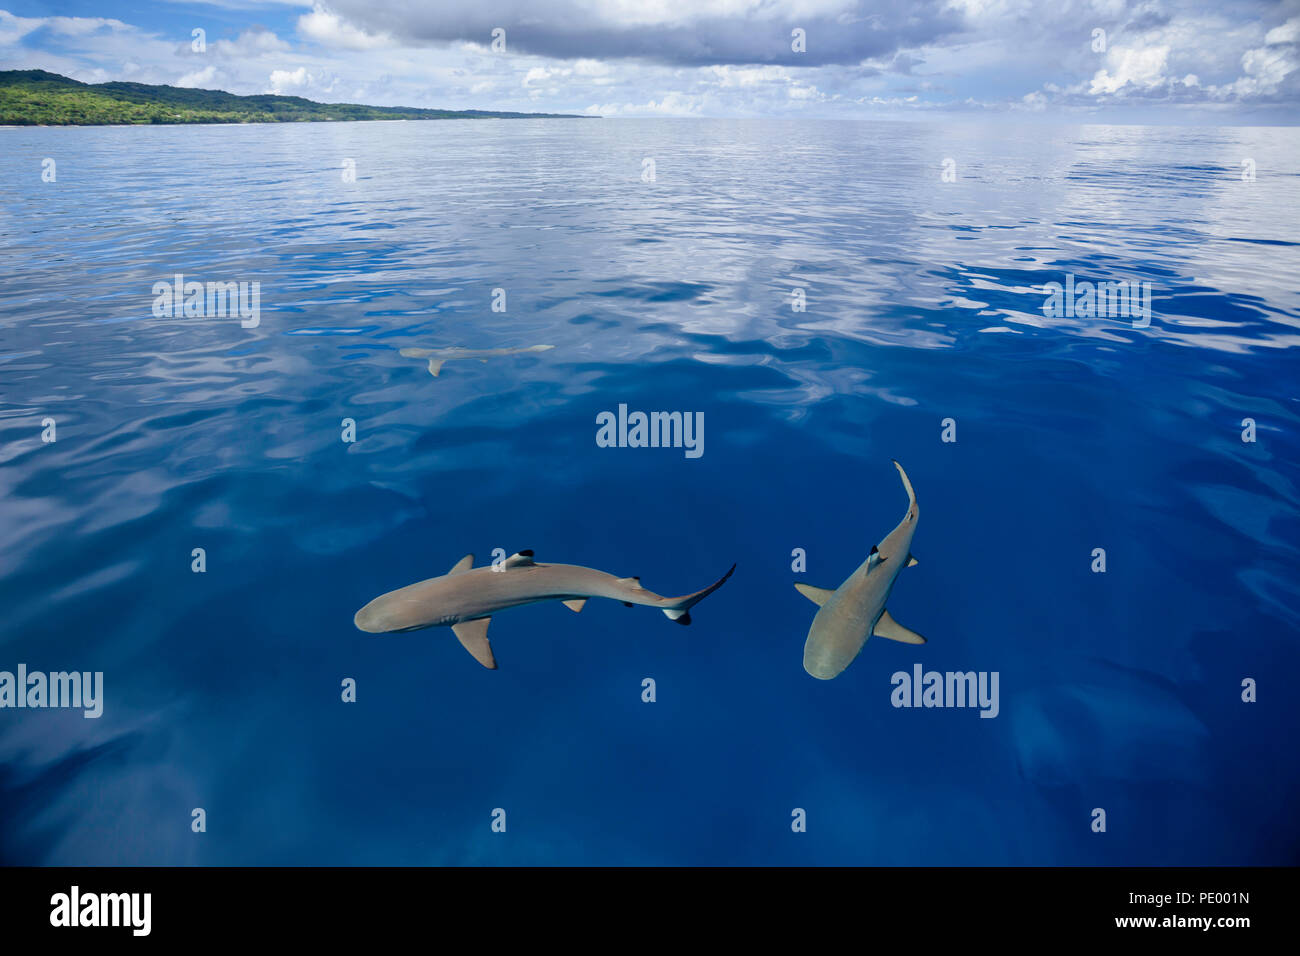 Schwarzspitzen Riffhaie, Carcharhinus melanopterus, vor der Insel Yap in Mikronesien. Ja, das ist ein echtes Foto. Keine digitale Manipulation. Stockfoto